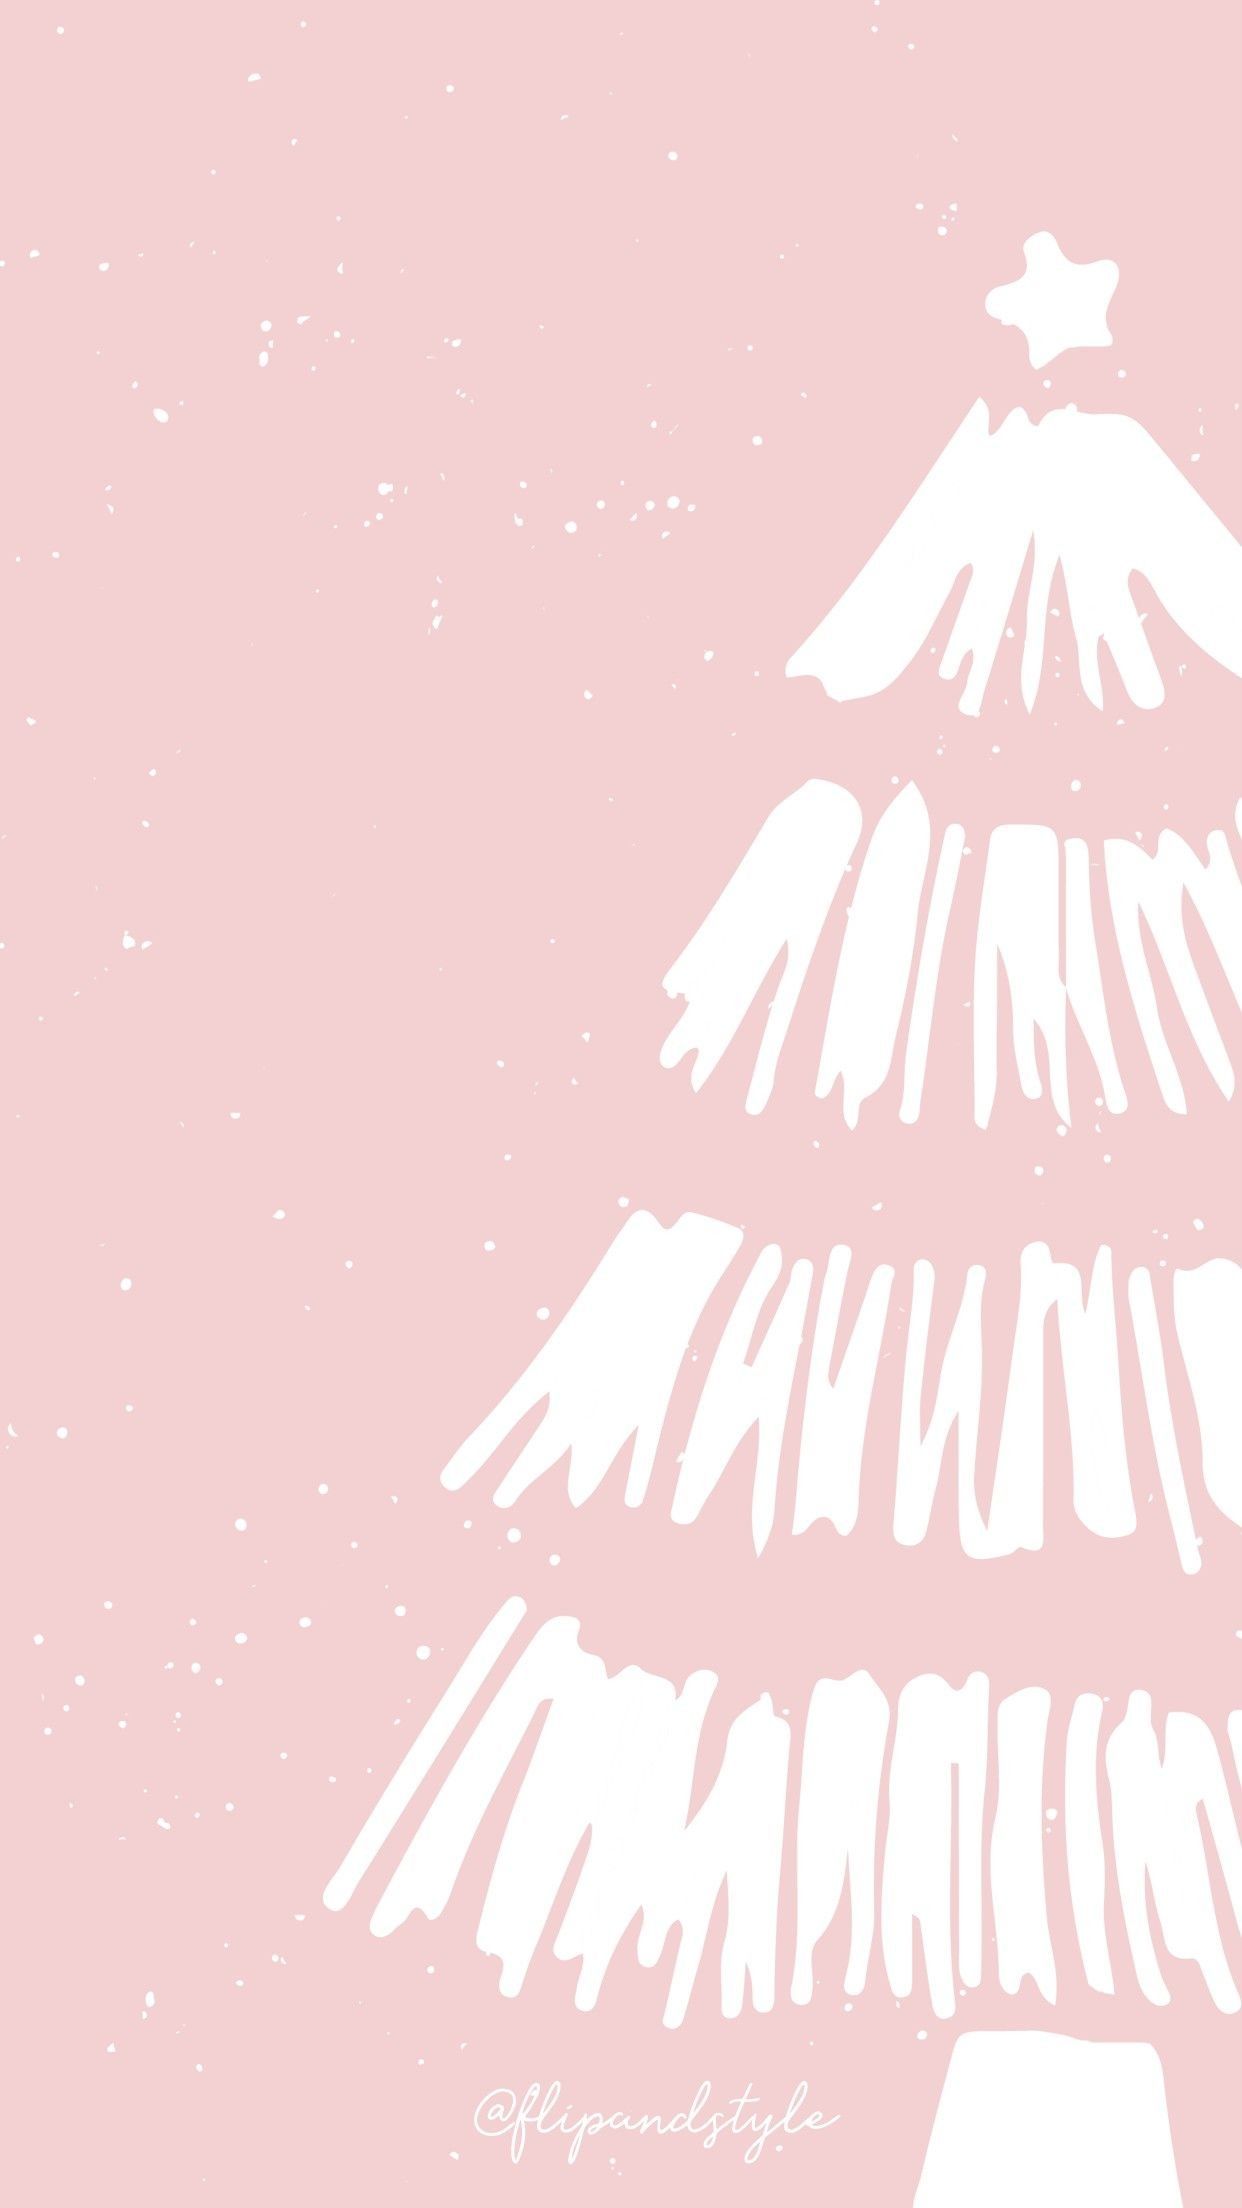 Luxury Cute Christmas iPhone Wallpaper di 2020. Ilustrasi kartun, Ilustrasi, Wallpaper bunga